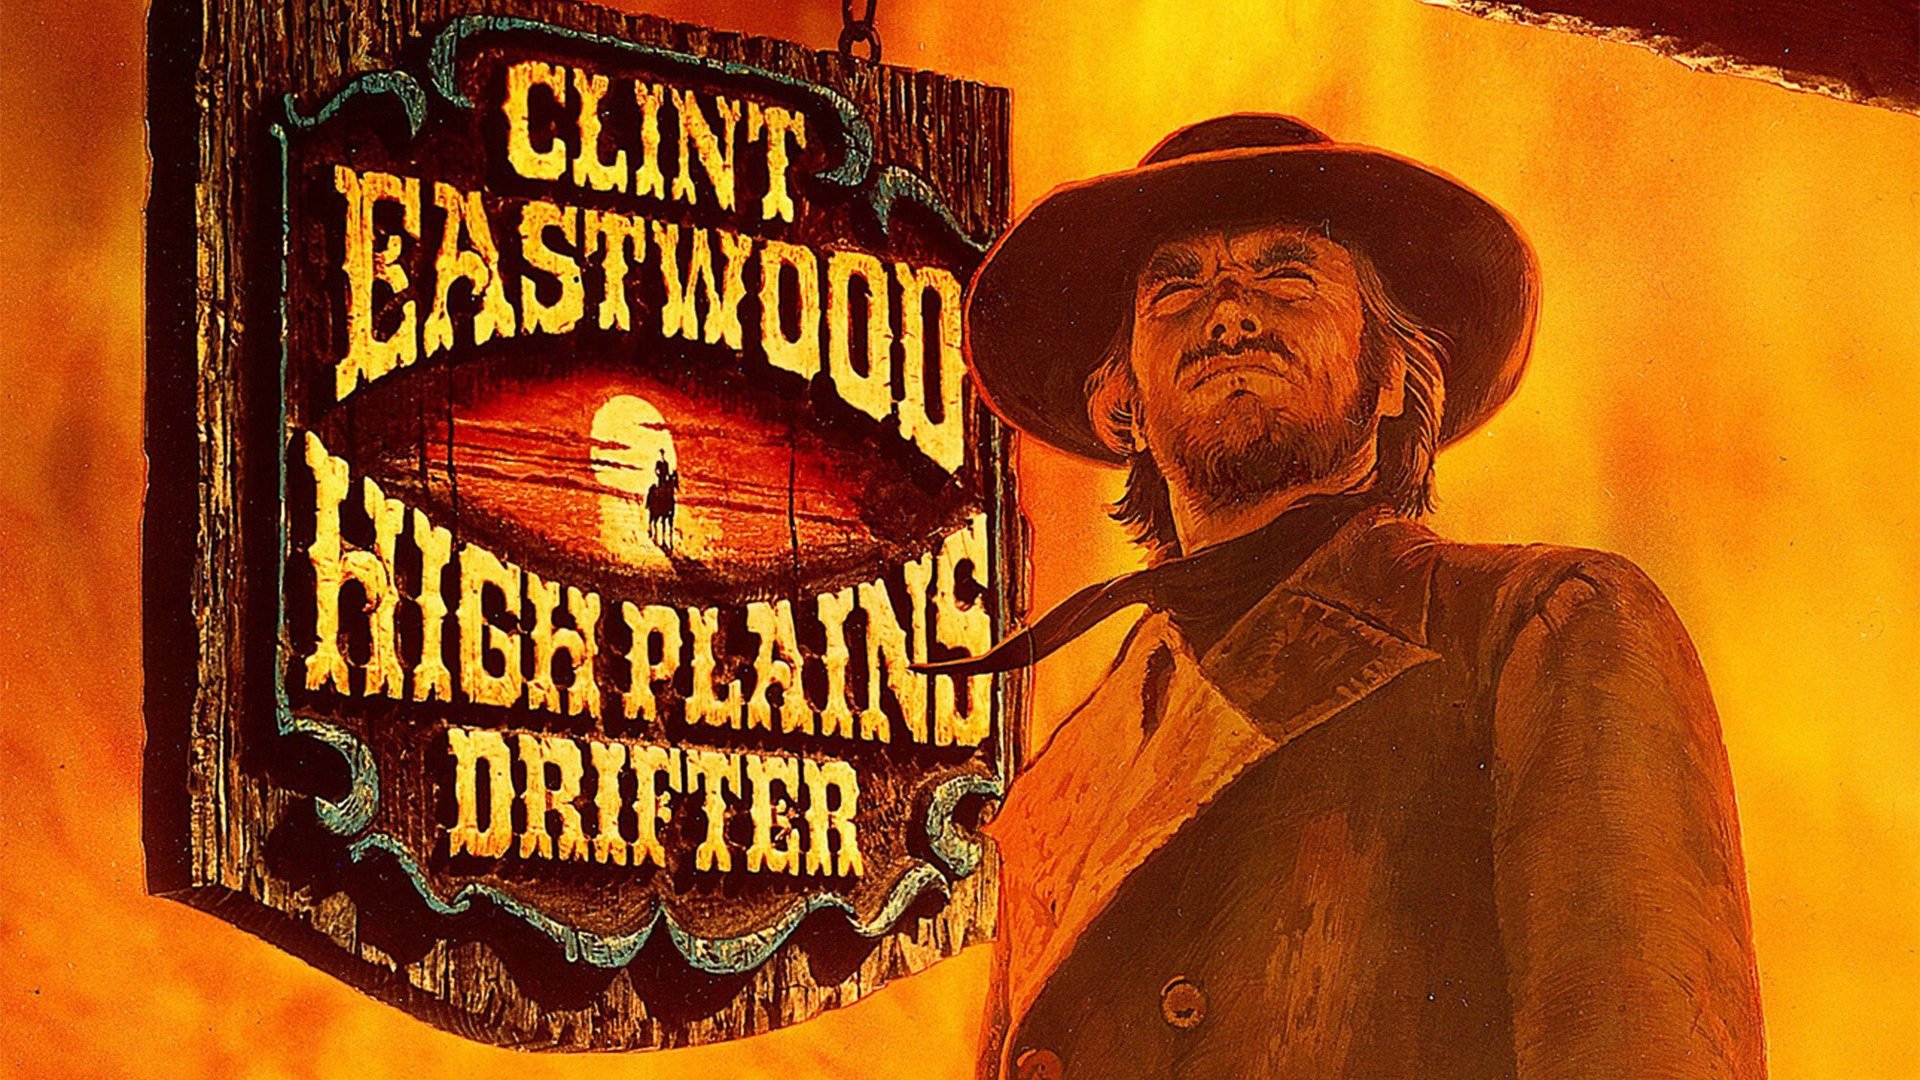 clint eastwood high plains drifter